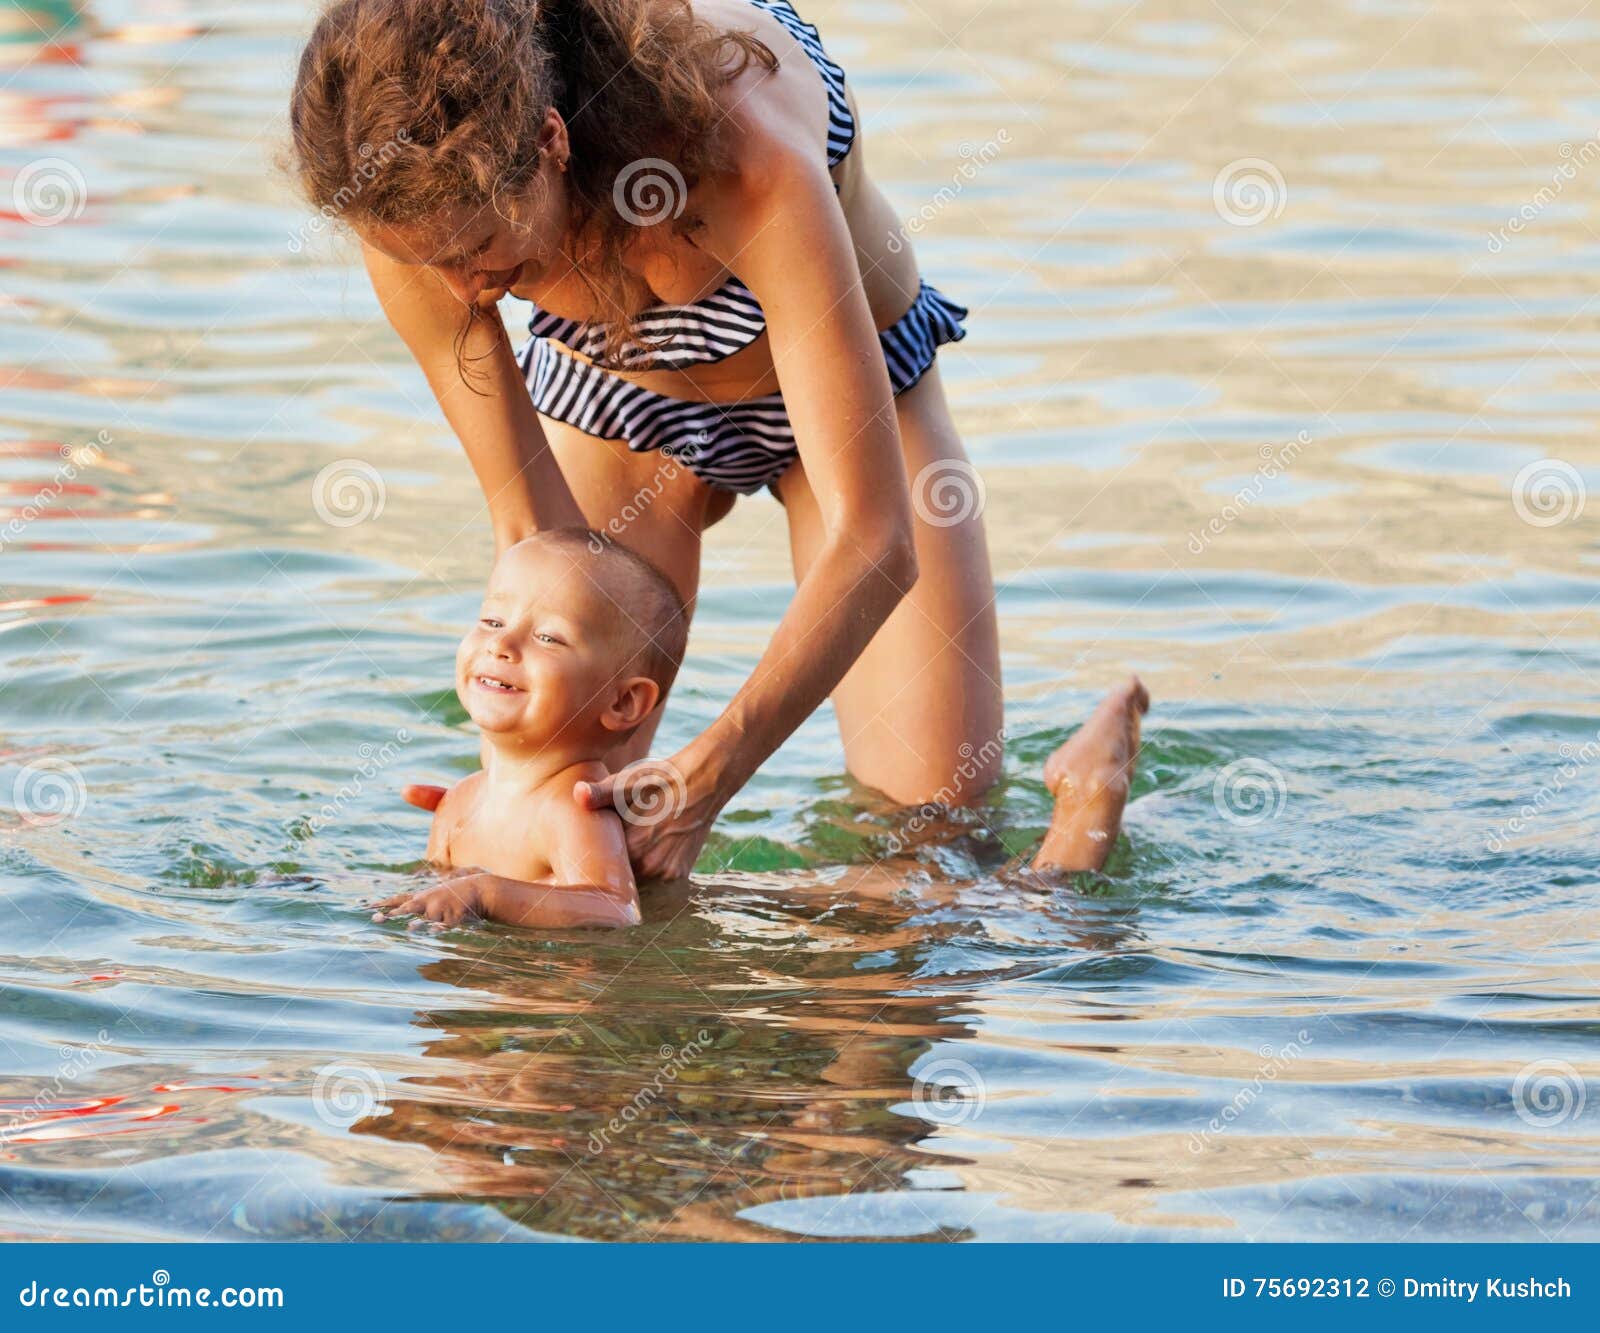 Сын купался в душе. Купание мамы и сына. Мамочки купаются. Совместное купание мамы с сыном. Мама купается в море.